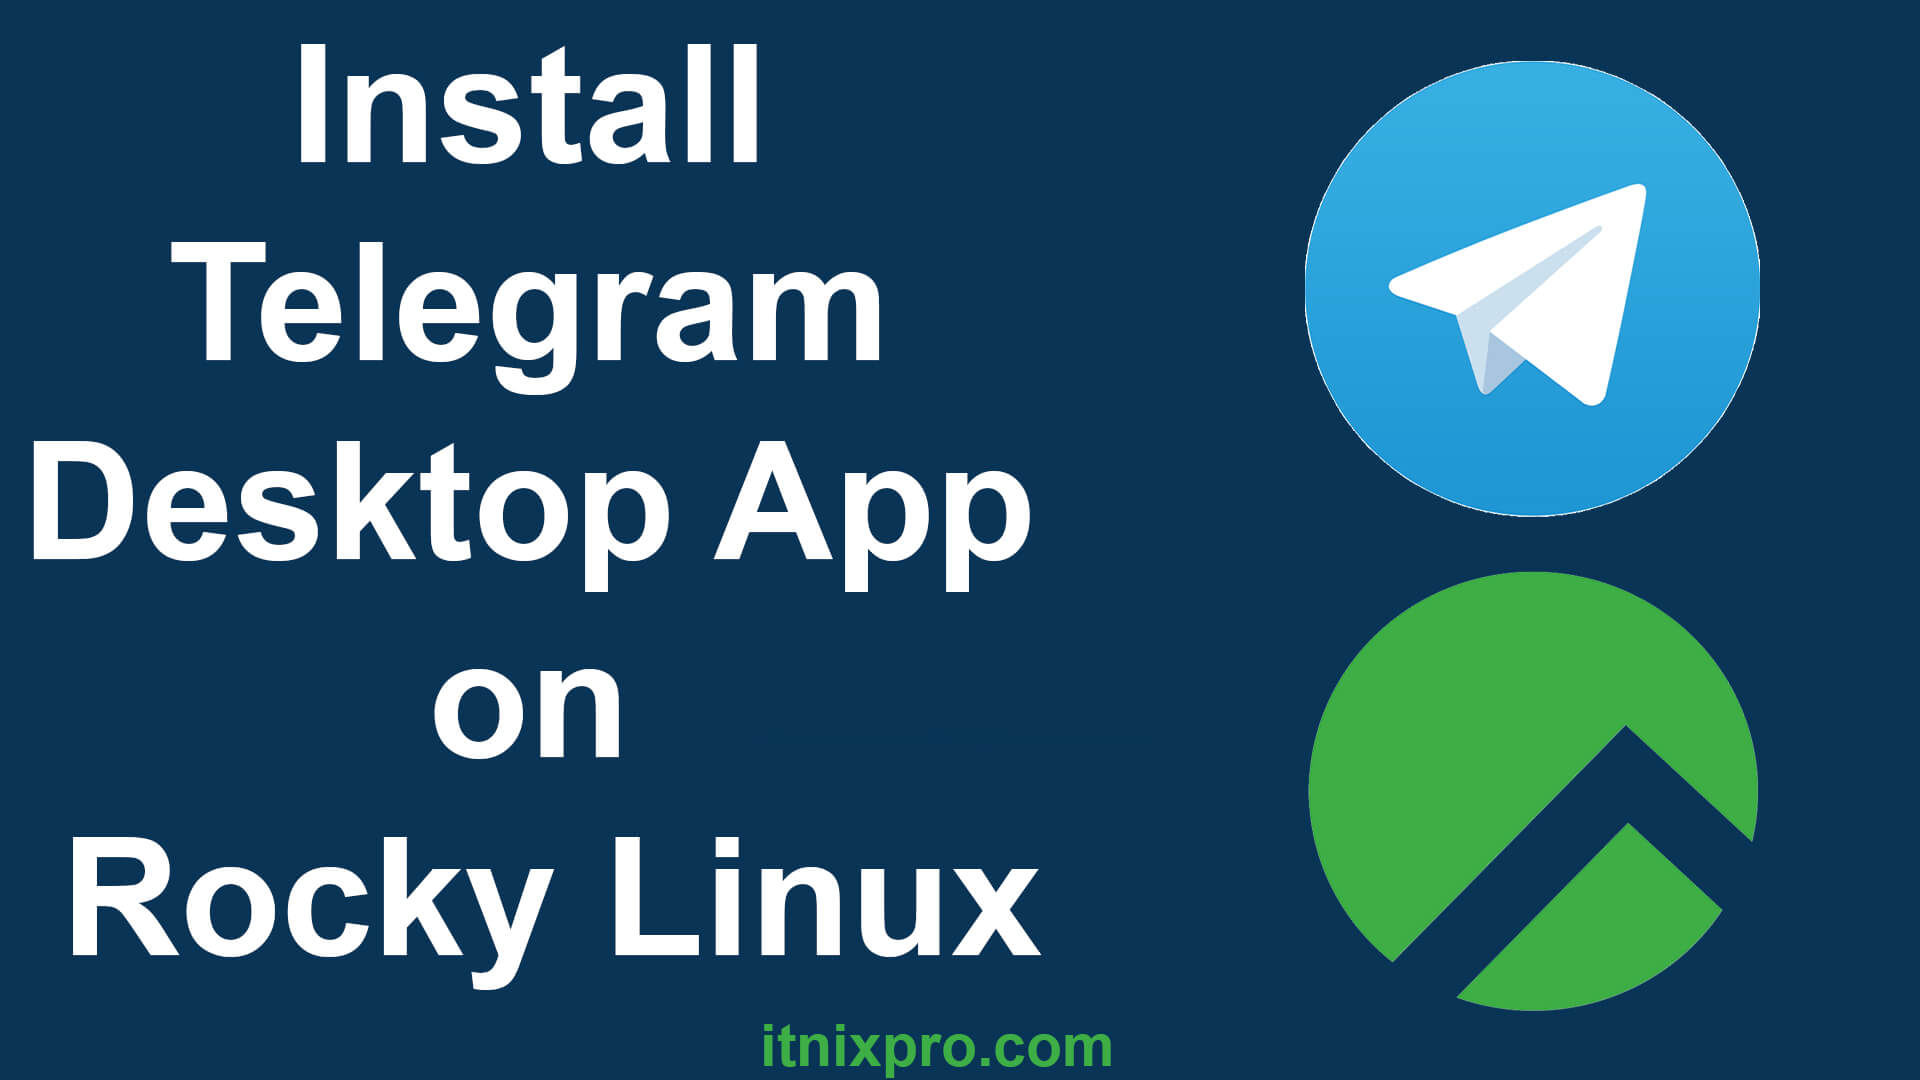 Install Telegram Desktop App on Rocky Linux